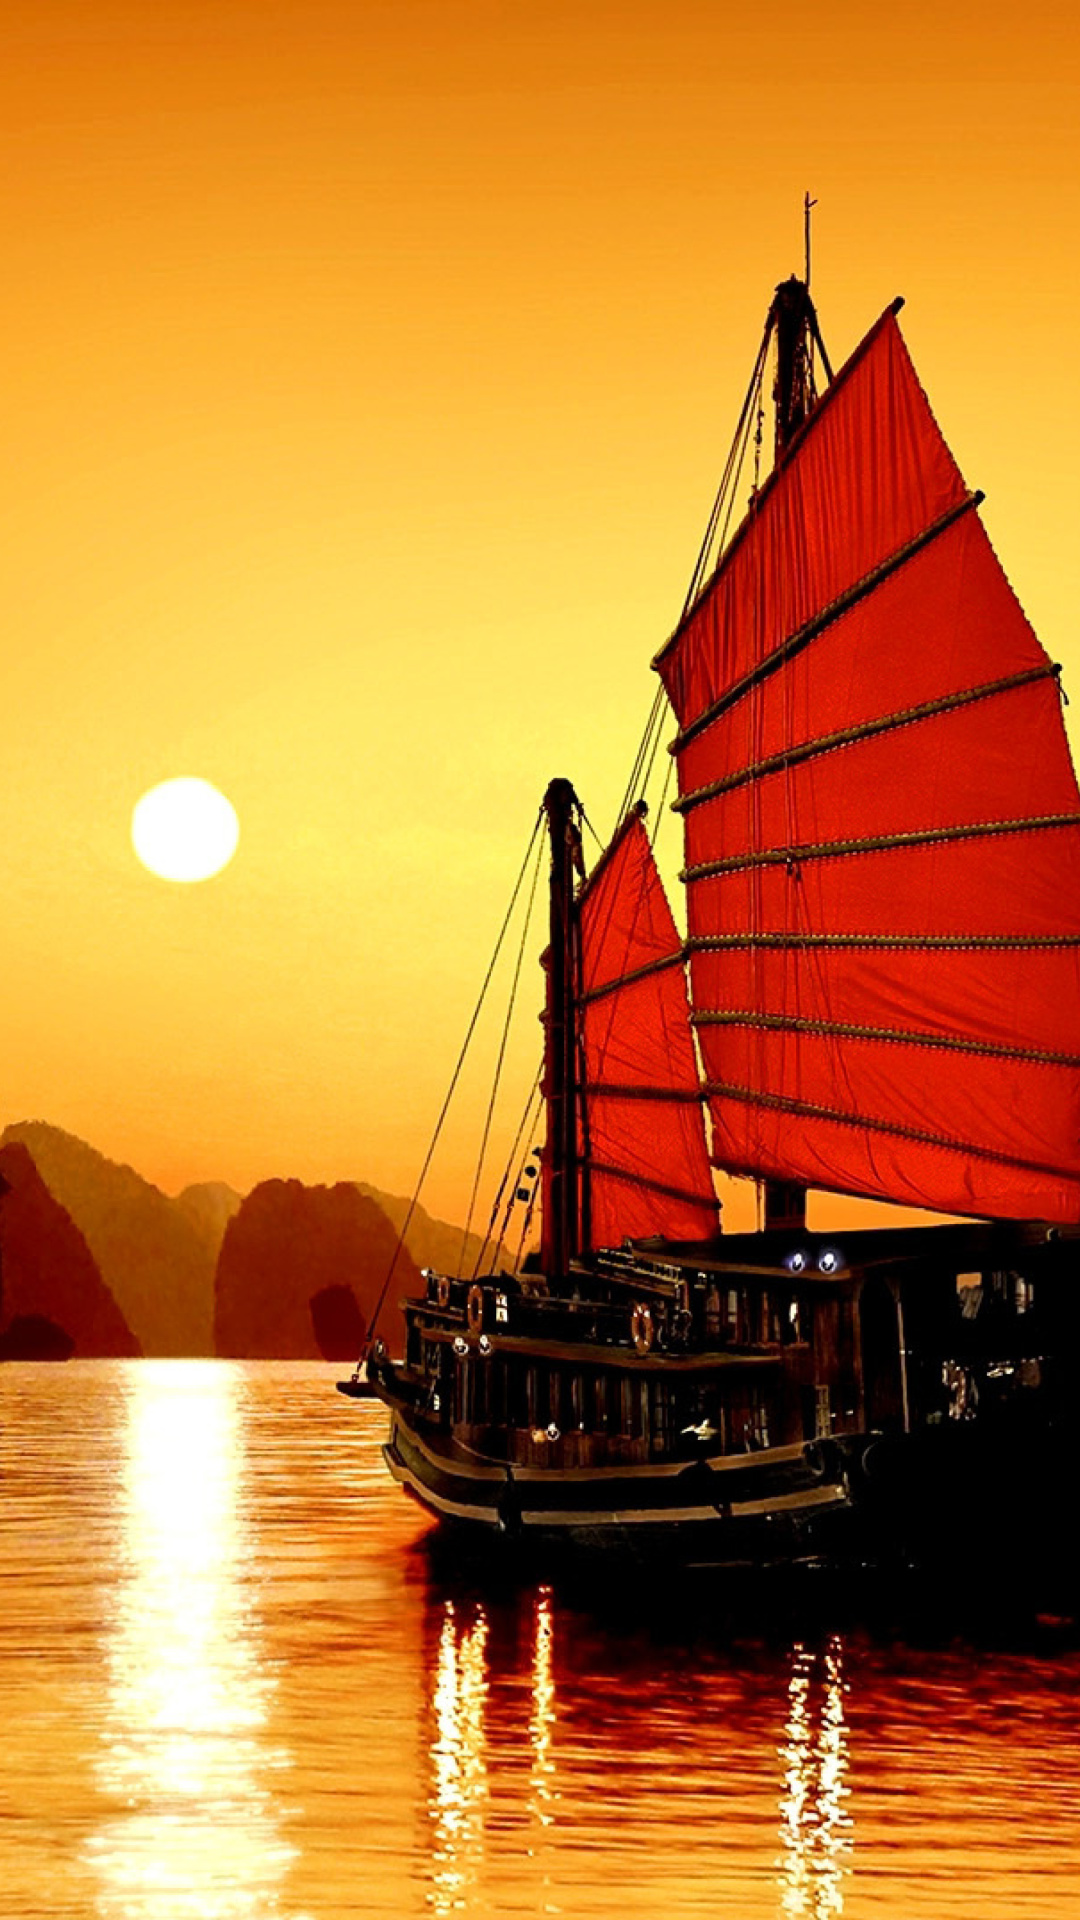 Обои Halong Bay, Vietnama in Sunset 1080x1920